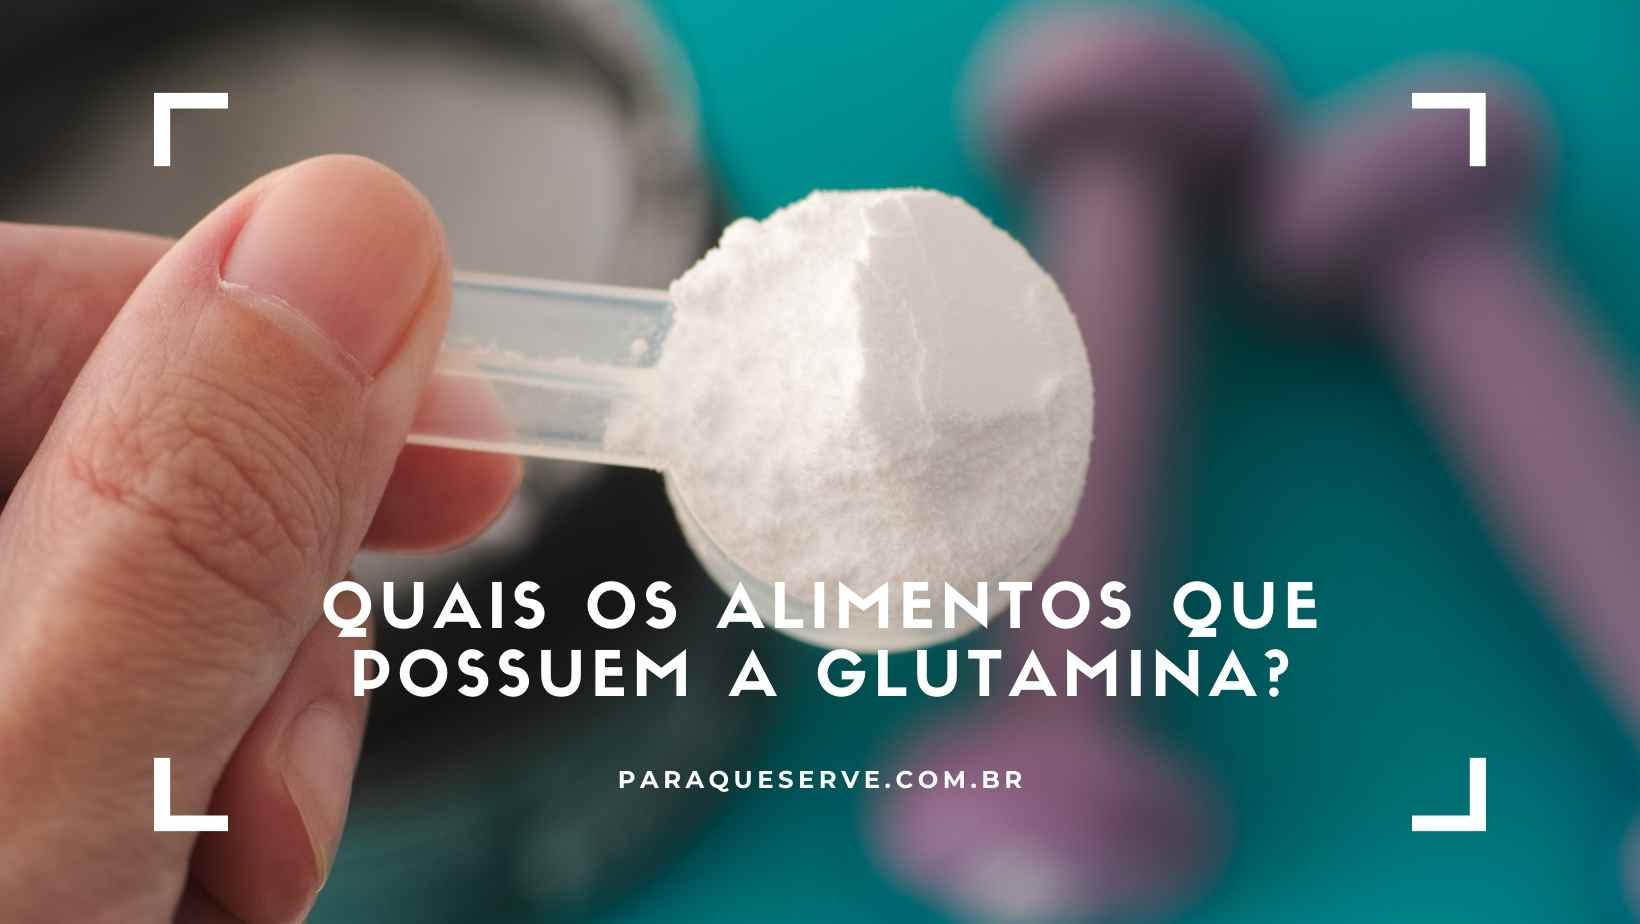 Quais os alimentos que possuem a glutamina?